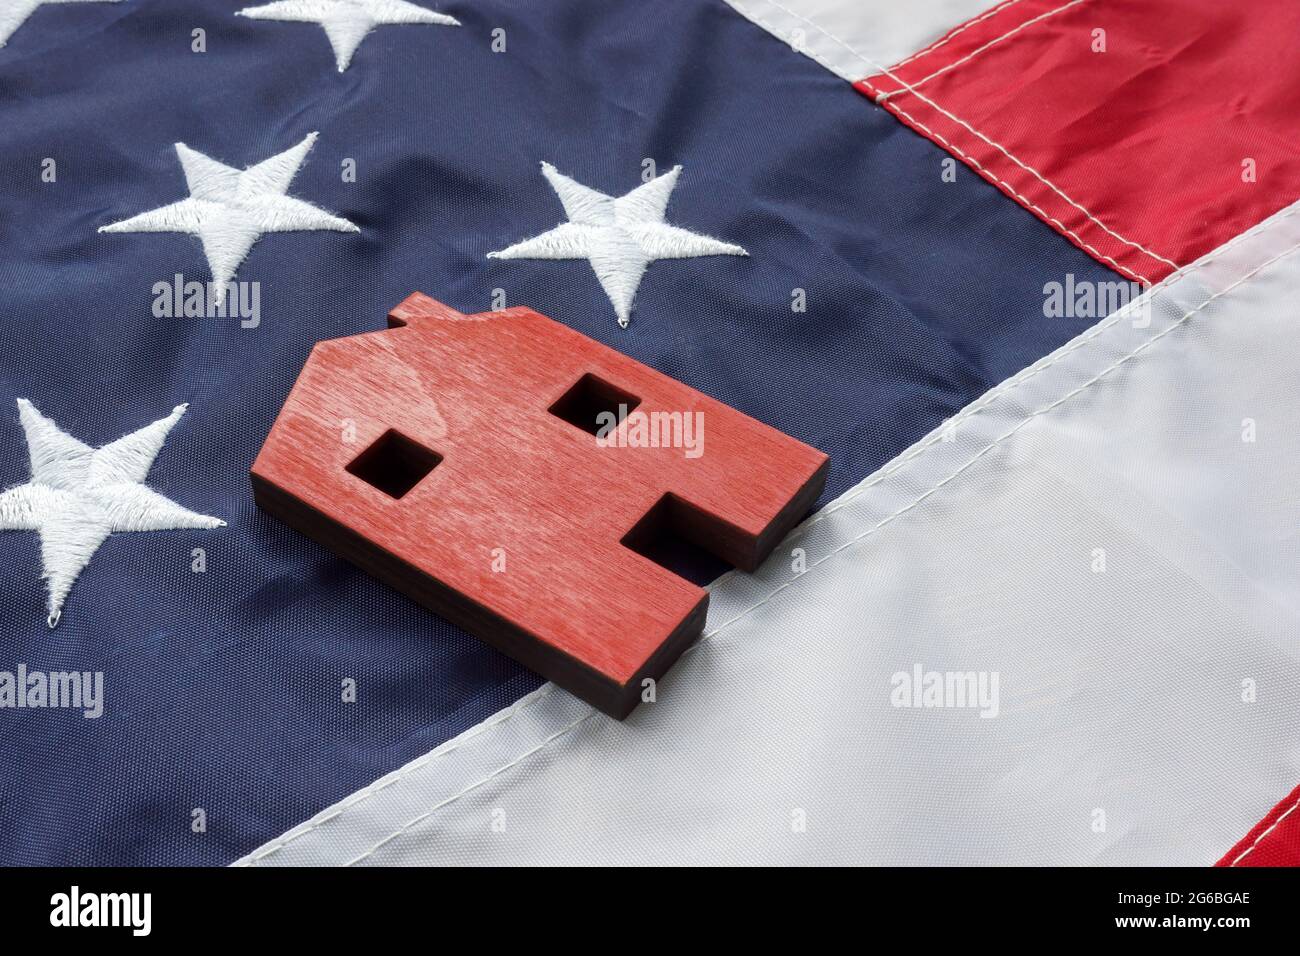 VA Rationalisierung der Refinanzierung für Darlehen zu Hause Konzept. Ein kleines Haus liegt auf der amerikanischen Flagge. Stockfoto